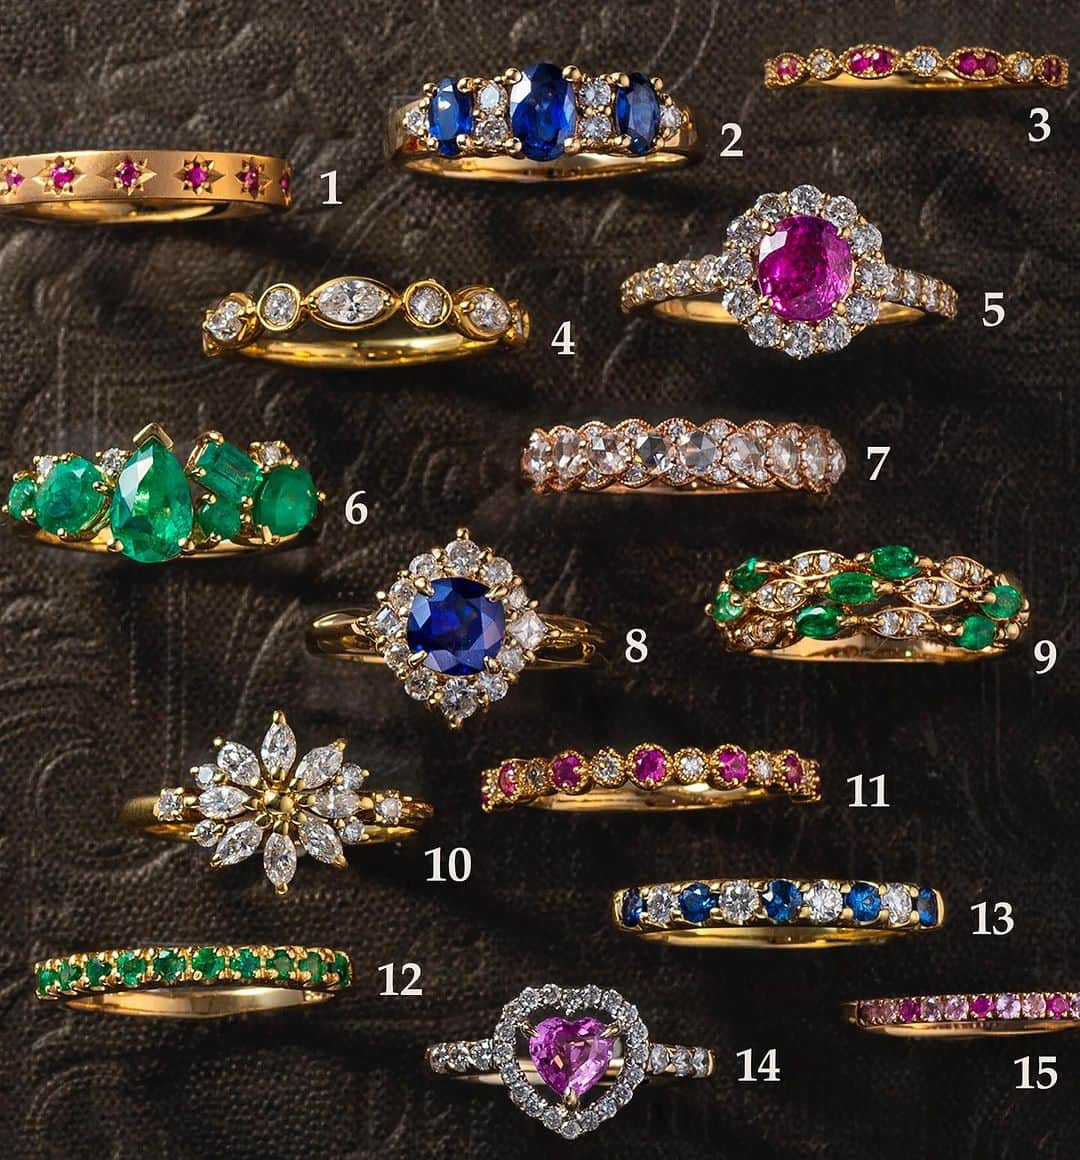 さんのインスタグラム写真 - (Instagram)「Autumn Ring Collection 🌈  エメラルドにサファイア、ルビー… 中世のカテドラルを彩るステンドグラスを思わせる 色とりどりの貴石たち。  暗がりでもくっきりと浮かび上がる鮮やかな光の色彩は『プレシャスストーン』の称号にふさわしい神々しさを兼ね備えています。  小粒でもしっかりと色の乗ったノーブルな色合いを楽しめる貴石はバンドタイプから始めるのもお勧め✨ ダークになりがちな秋冬の差し色にいかがでしょうか？  1. K10 ルビー リング Lucky Star  ¥49,800 (＊)  2. K18 サファイア スリーストーン リング  ¥108,900  3. K10 ルビー ダイヤモンド リング  ¥29,800 (＊)  4. K18 ダイヤモンド リング  ¥128,000 (＊)  5. K18 ピンクサファイア リング  ¥148,000 (☆)  6. K18 エメラルド リング  ¥128,000 (☆)  7. K18 ローズカットダイヤモンド リング  =Sold= (☆)  8. K18 サファイア リング  ¥188,000  9. K18 エメラルド ダイヤモンド リング  ¥59,800  10. K18 ダイヤモンド フラワー リング  ¥82,000 =Sold=  11. K18 ルビー ダイヤモンド リング  ¥99,800 (＊)  12. K18 エメラルド リング  ¥29,800 =Sold=  13. K18 サファイア ダイヤモンド リング  ¥54,800  14. K18WG ピンクサファイア リング  ¥59,800 (☆)  15. K10 グラデーション リング Rose  ¥29,800 (＊)  (＊)は新品、その他はリユース品 *すべてAlagin Ring Collection より  (☆)はAlagin Online Shop 掲載商品です。  ✴︎ For International Customers ✴︎  Please feel free to DM if you are interested in buying any of items posted in our feed. We are happy to help you.  ＋─＋─＋─＋─＋─＋─＋─＋─＋─＋─＋─＋─  ◇ Alagin Online Shop ◇  https://alag-in.jp/  プロフィールリンク🔗 Alagin Online Shop  Alagin  Tel.  03-3836-3926 (GALA JEWELRY おかちまち本店1F)   ＋─＋─＋─＋─＋─＋─＋─＋─＋─＋─＋─＋─  ・ ・ ・ ・  #GALA #ガラ #alagin #リユース #ジュエリー #jewelry #accessory  #石好きな人と繋がりたい #石好きさんと繋がりたい #宝石 #ジュエリー好き女子 #ジュエリー好き #ご褒美ジュエリー #ジュエリー好きな人と繋がりたい #ジュエリー好きさんと繋がりたい #大人ジュエリー #アクセサリー #サファイアリング #ルビーリング #ダイヤモンドリング #エメラルドリング #ピンクサファイア #エタニティリング」10月16日 18時01分 - gala_okachimachi